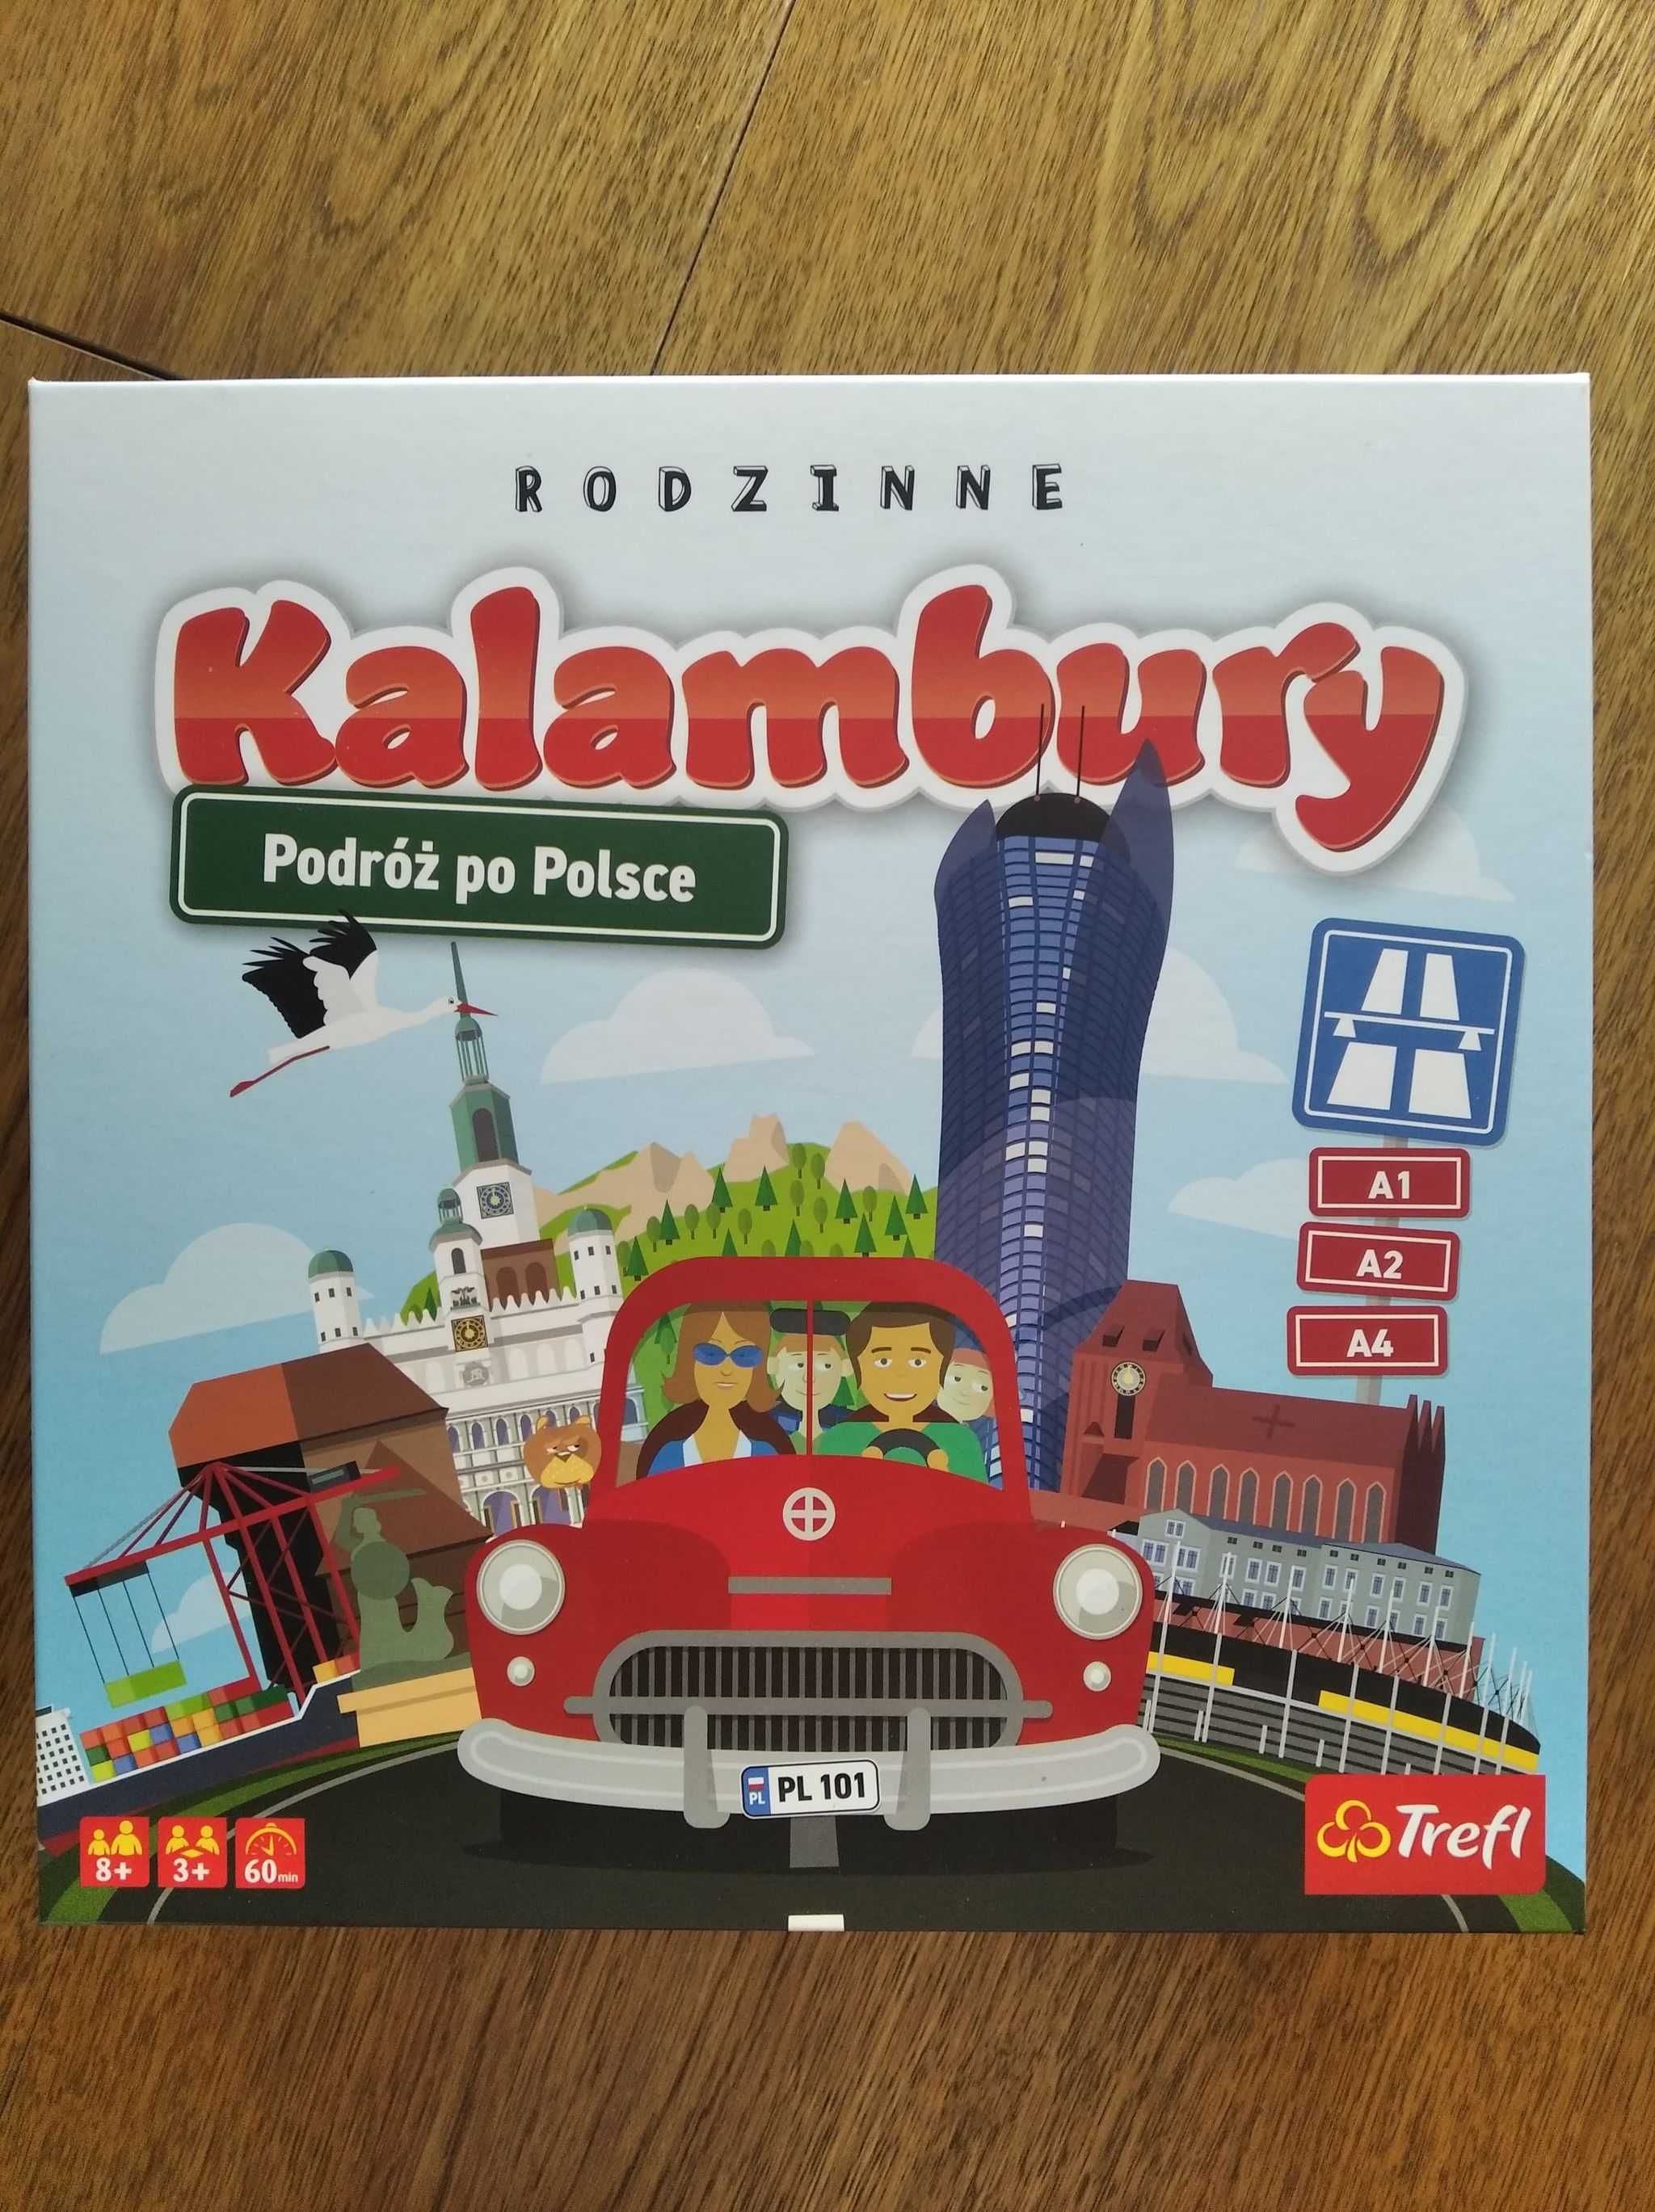 Sprzedam grę rodzinną Kalambury: Podróż po Polsce. Trefl